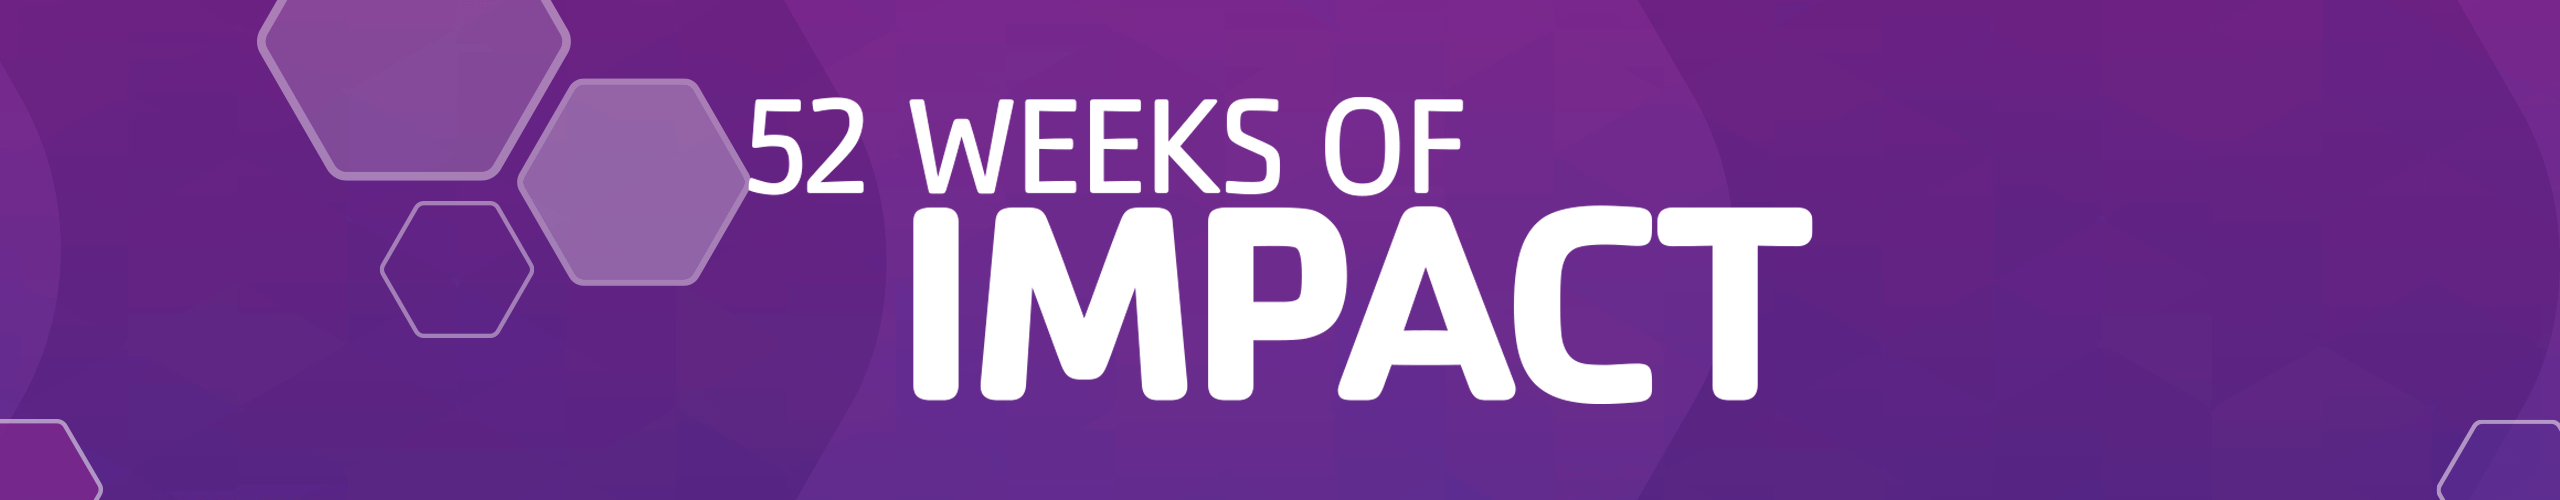 52 Weeks of Impact